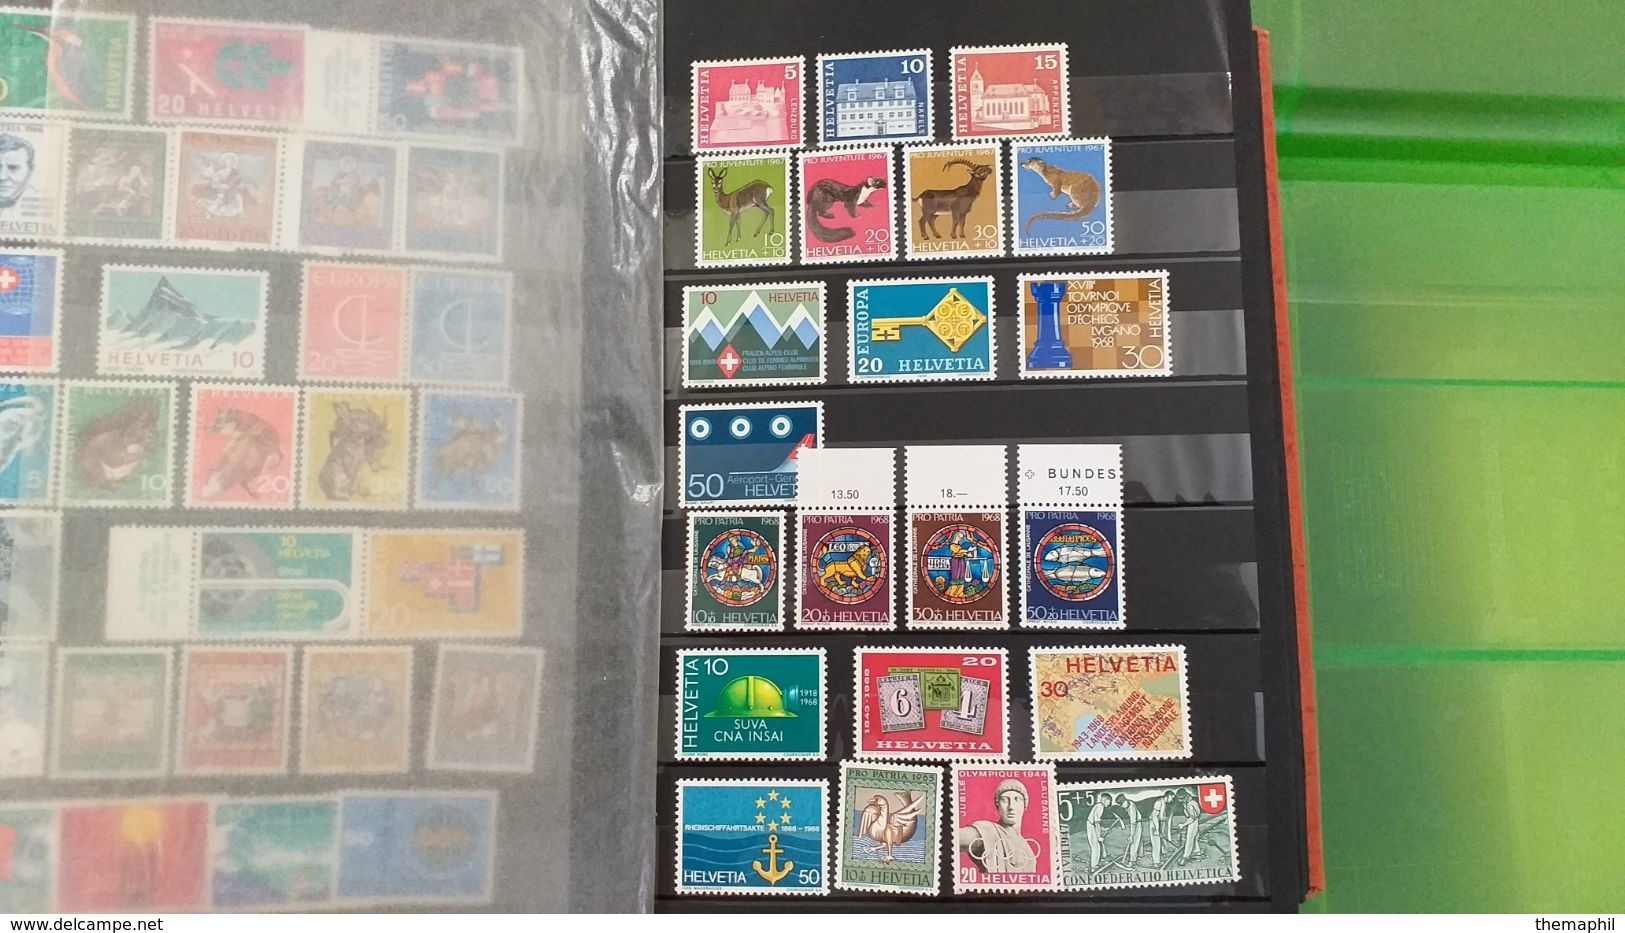 lot n° TH 483 SUISSE un bon classeur de timbres majoritée de  neufs xx